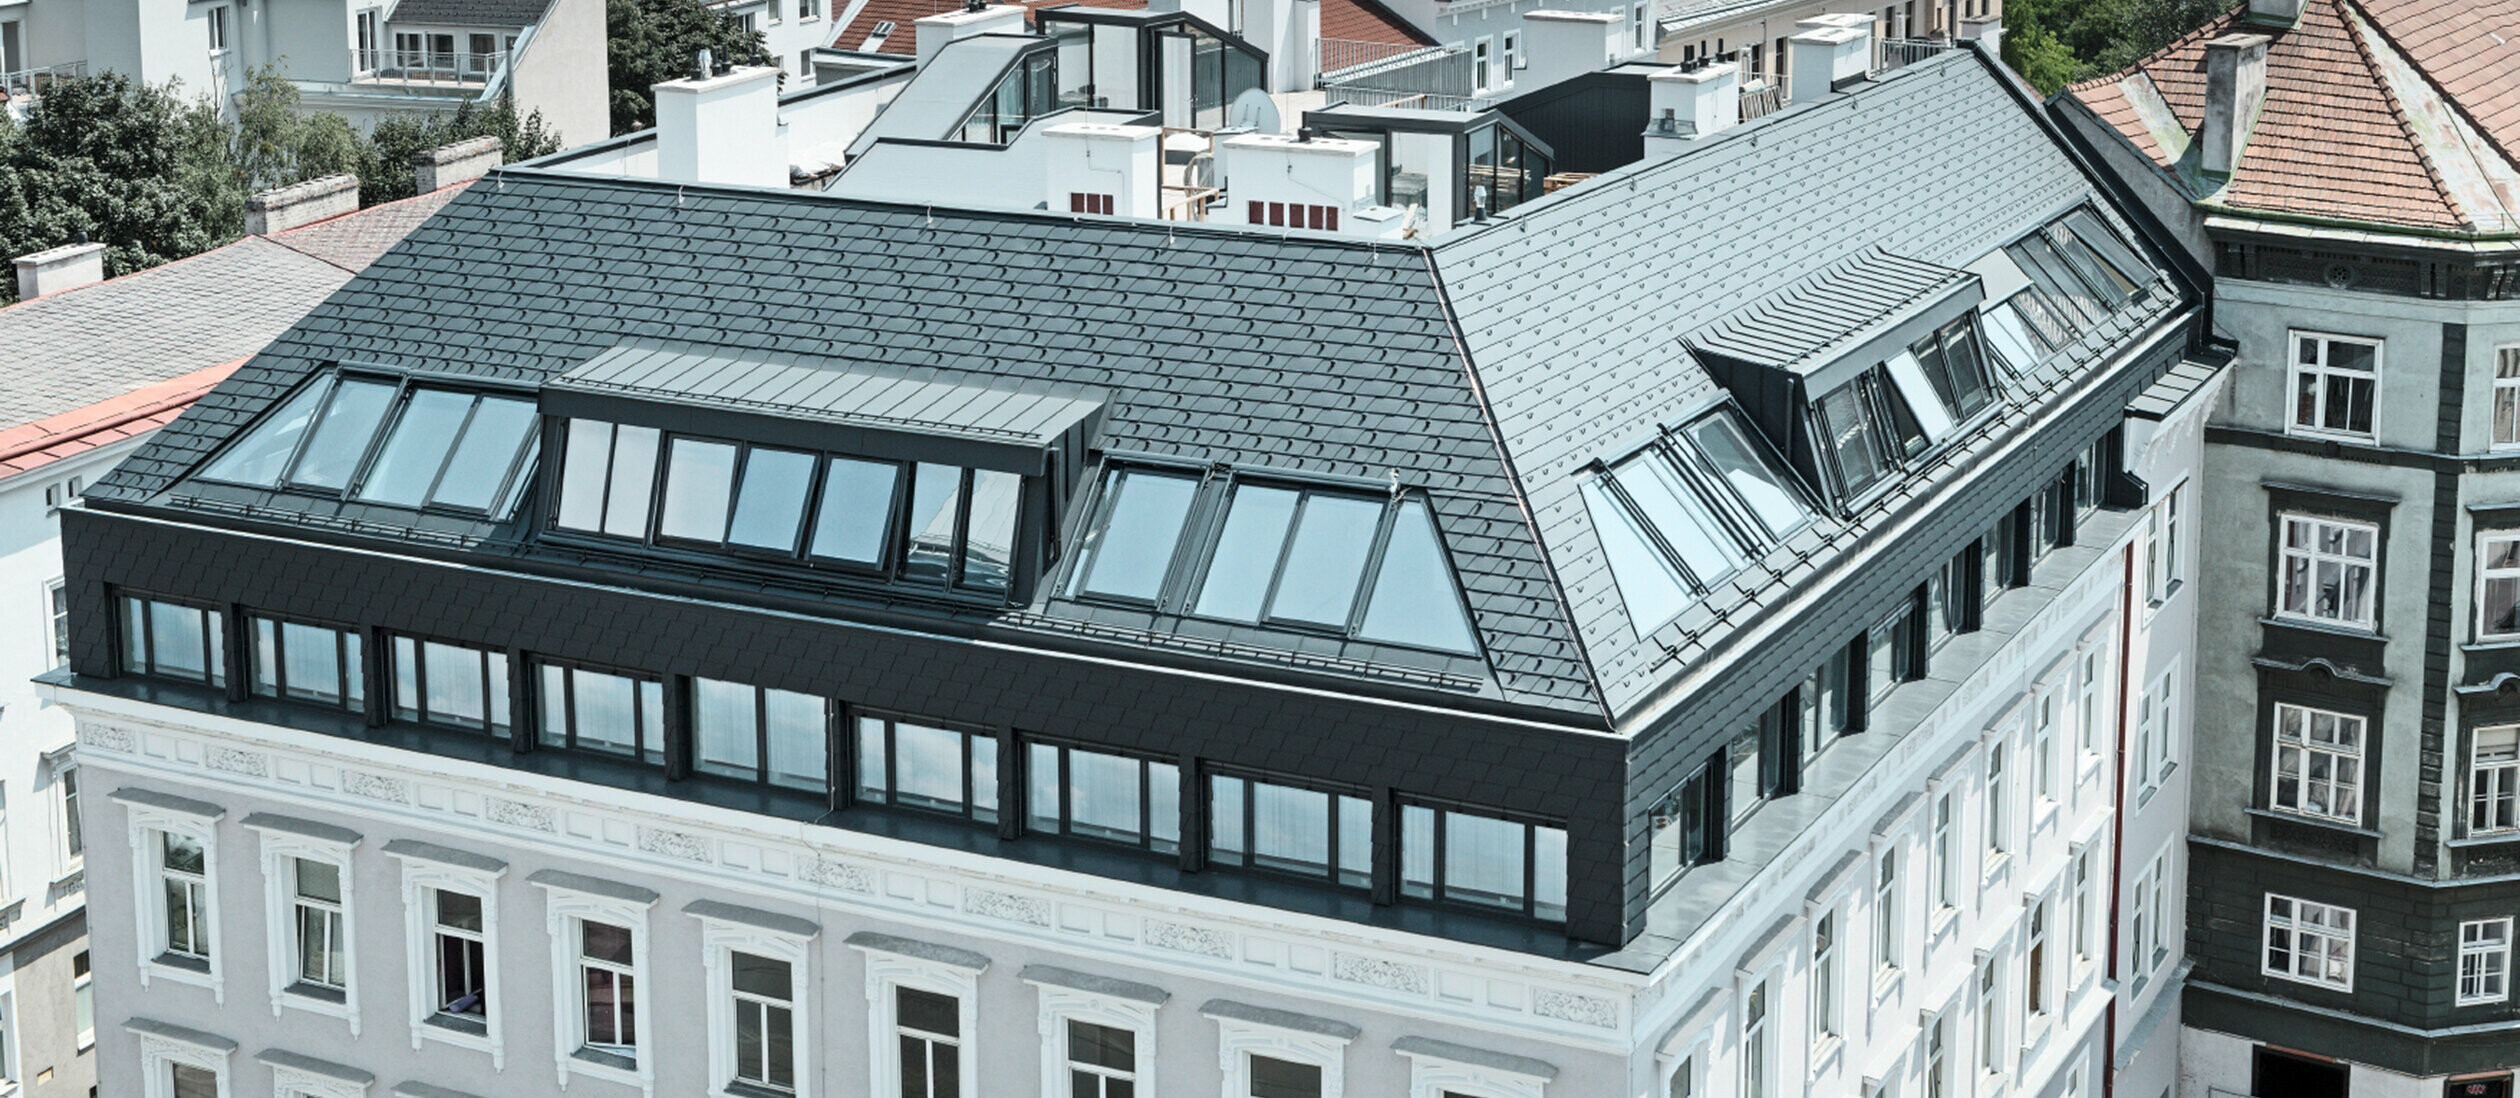 Dachgeschoßausbau eines Wohnhauses in Wien Mariahilf, das Dachgeschoß wurde mit Penthouse Wohnungen ausgebaut; Das Dach wurde mit PREFA Dachschindeln in Anthrazit verkleidet.